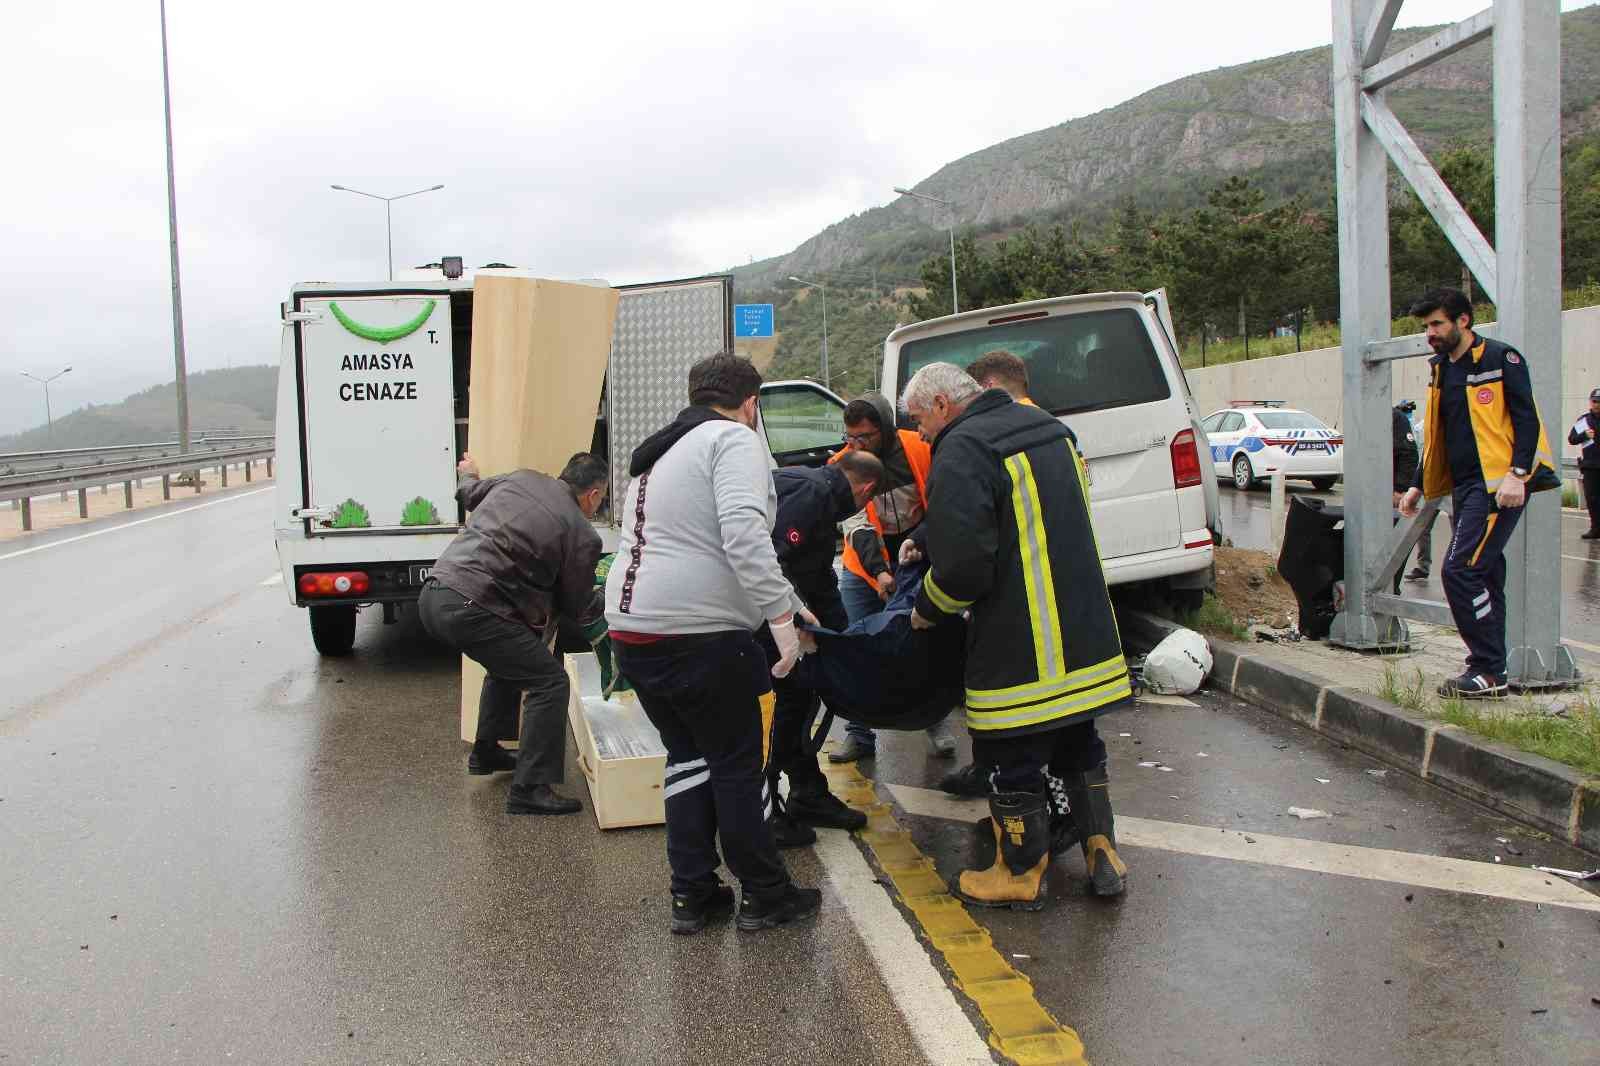 Amasya'da minibüs yol kenarındaki pikaba çarptı: 2 ölü, 6 yaralı
